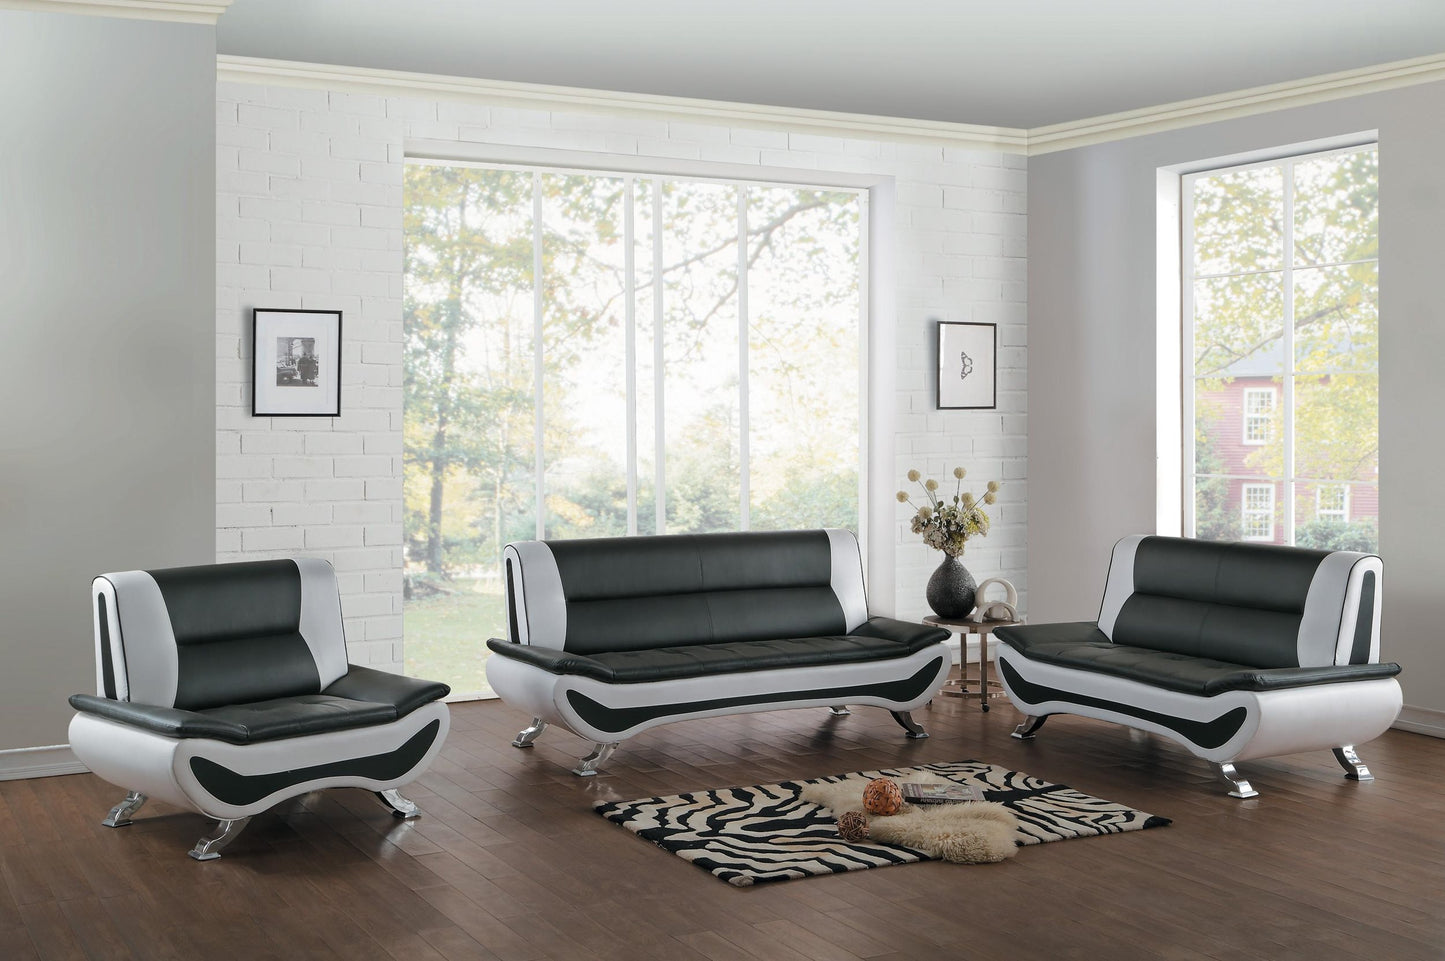 Homelegance Veloce Park Sofa in Black & White Leather